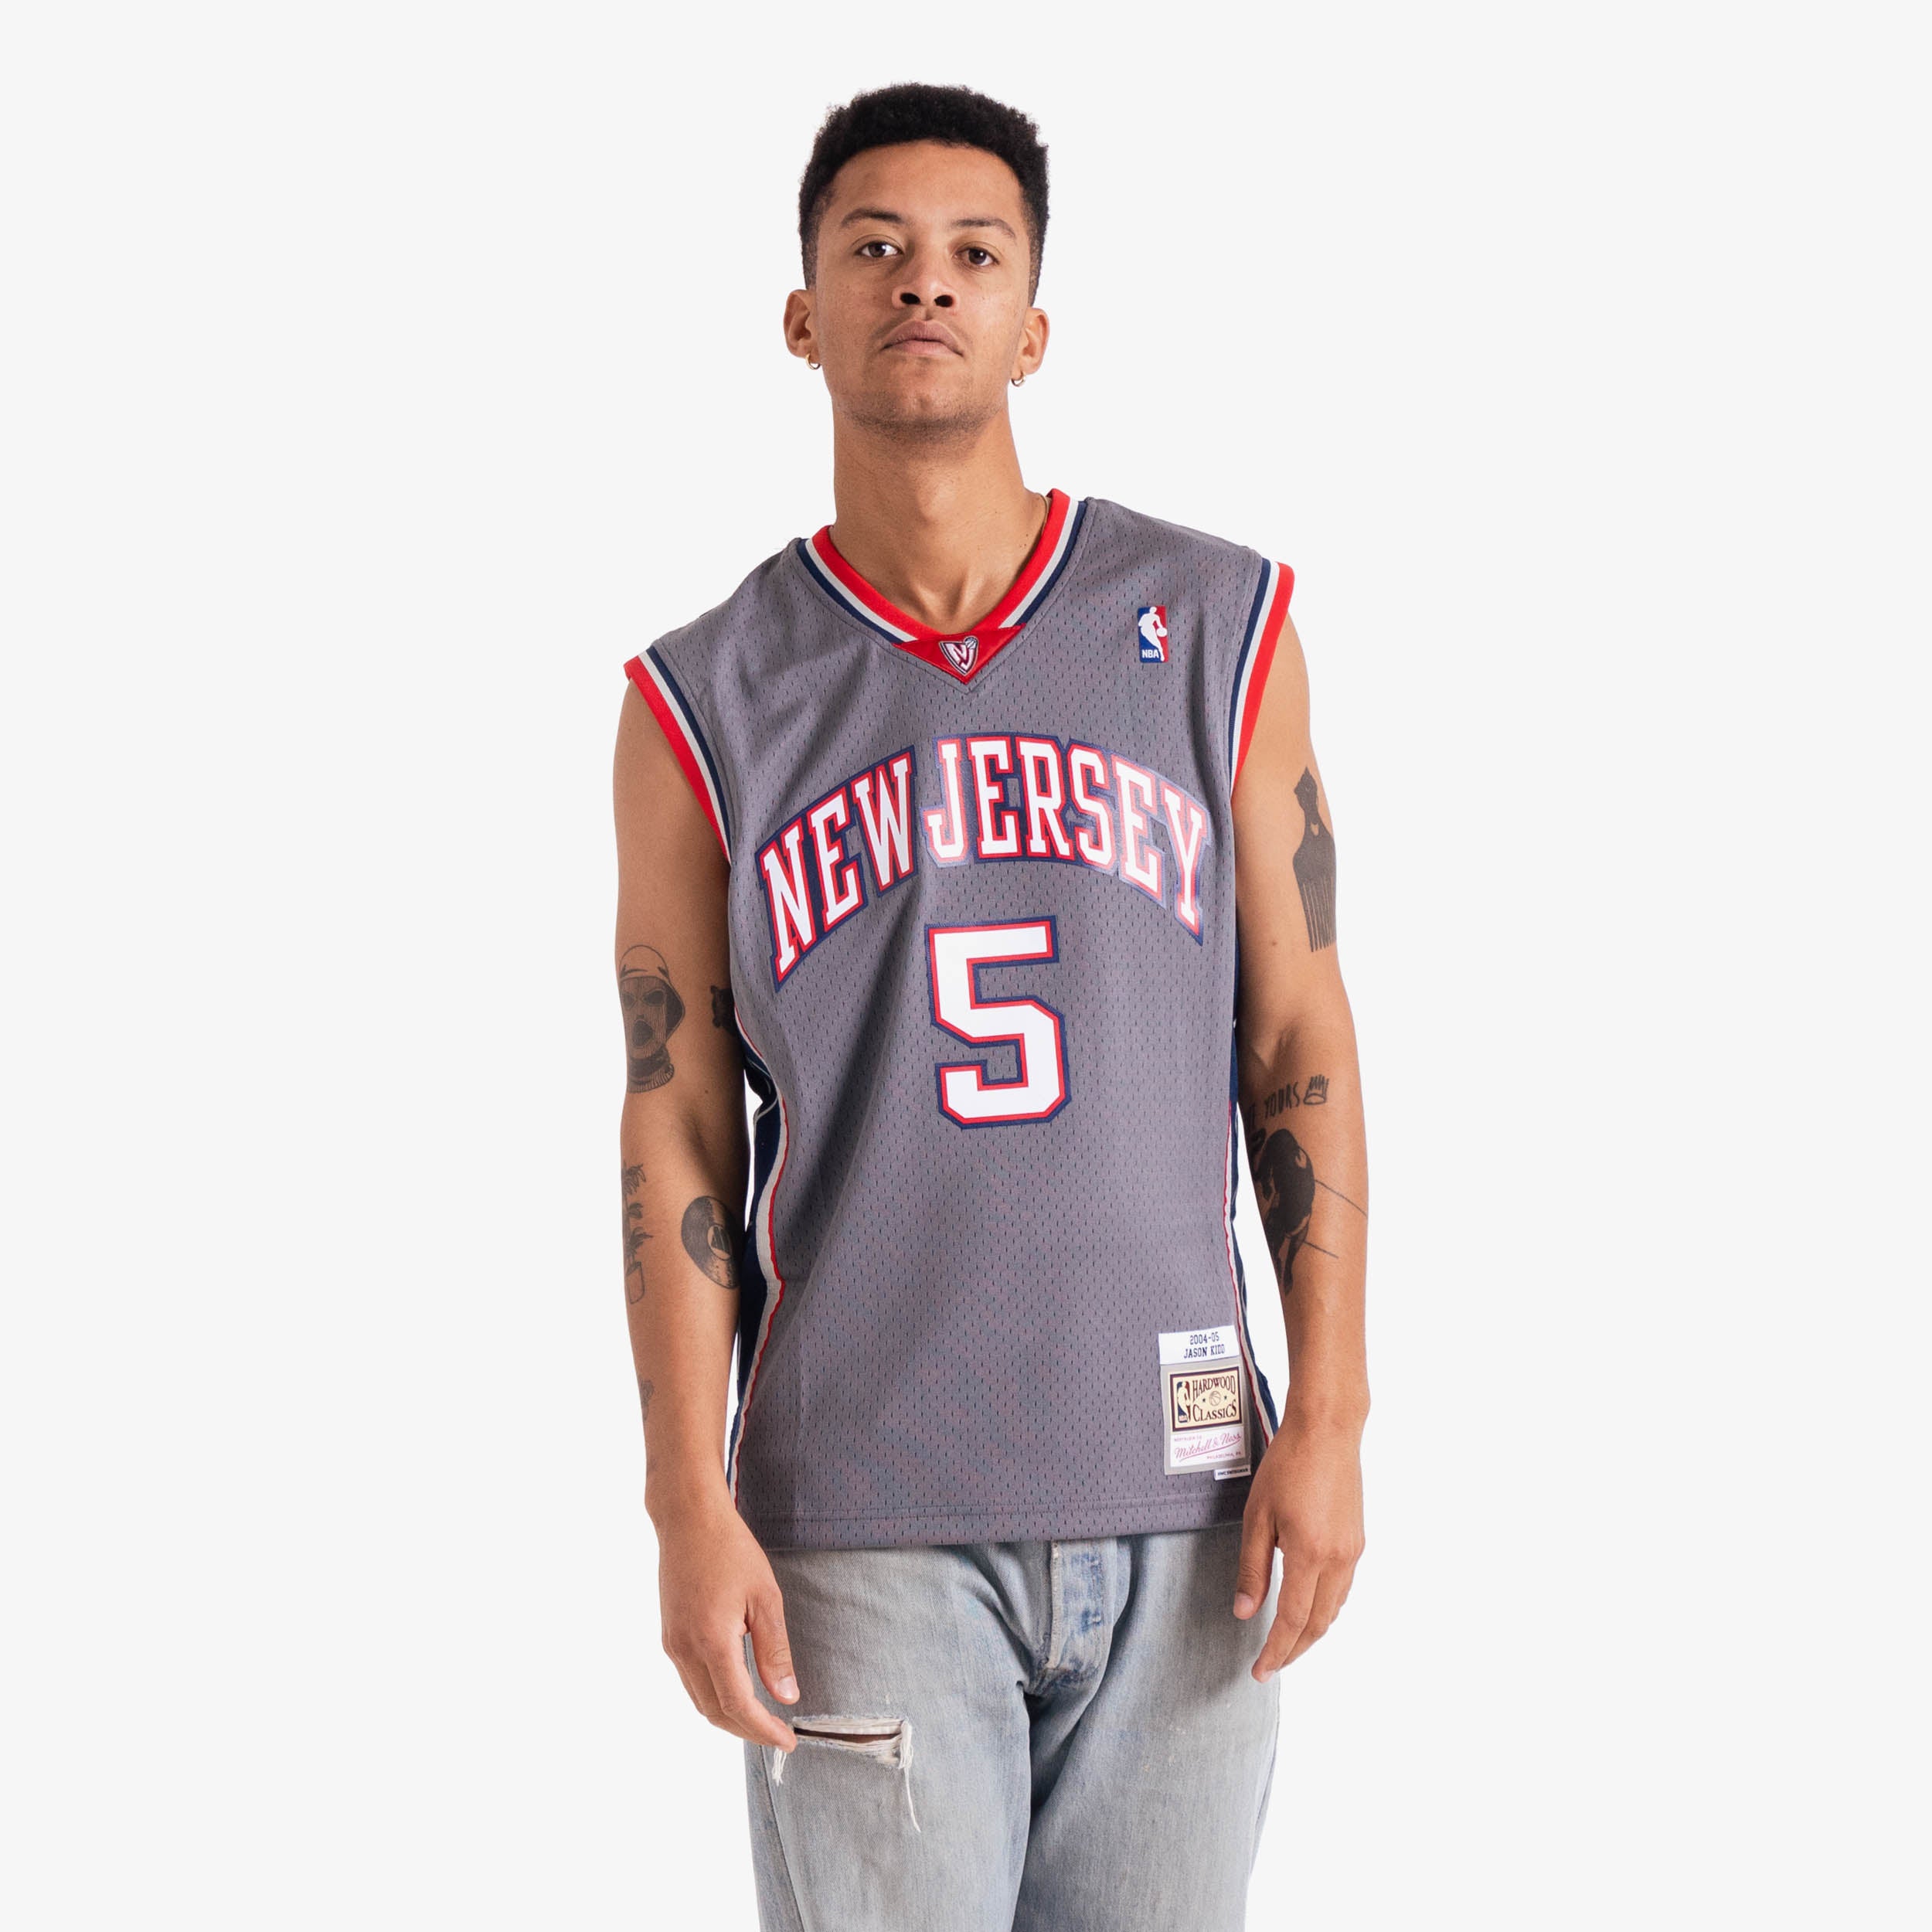 Reebok, Shirts, Jason Kidd New Jersey Nets Jersey